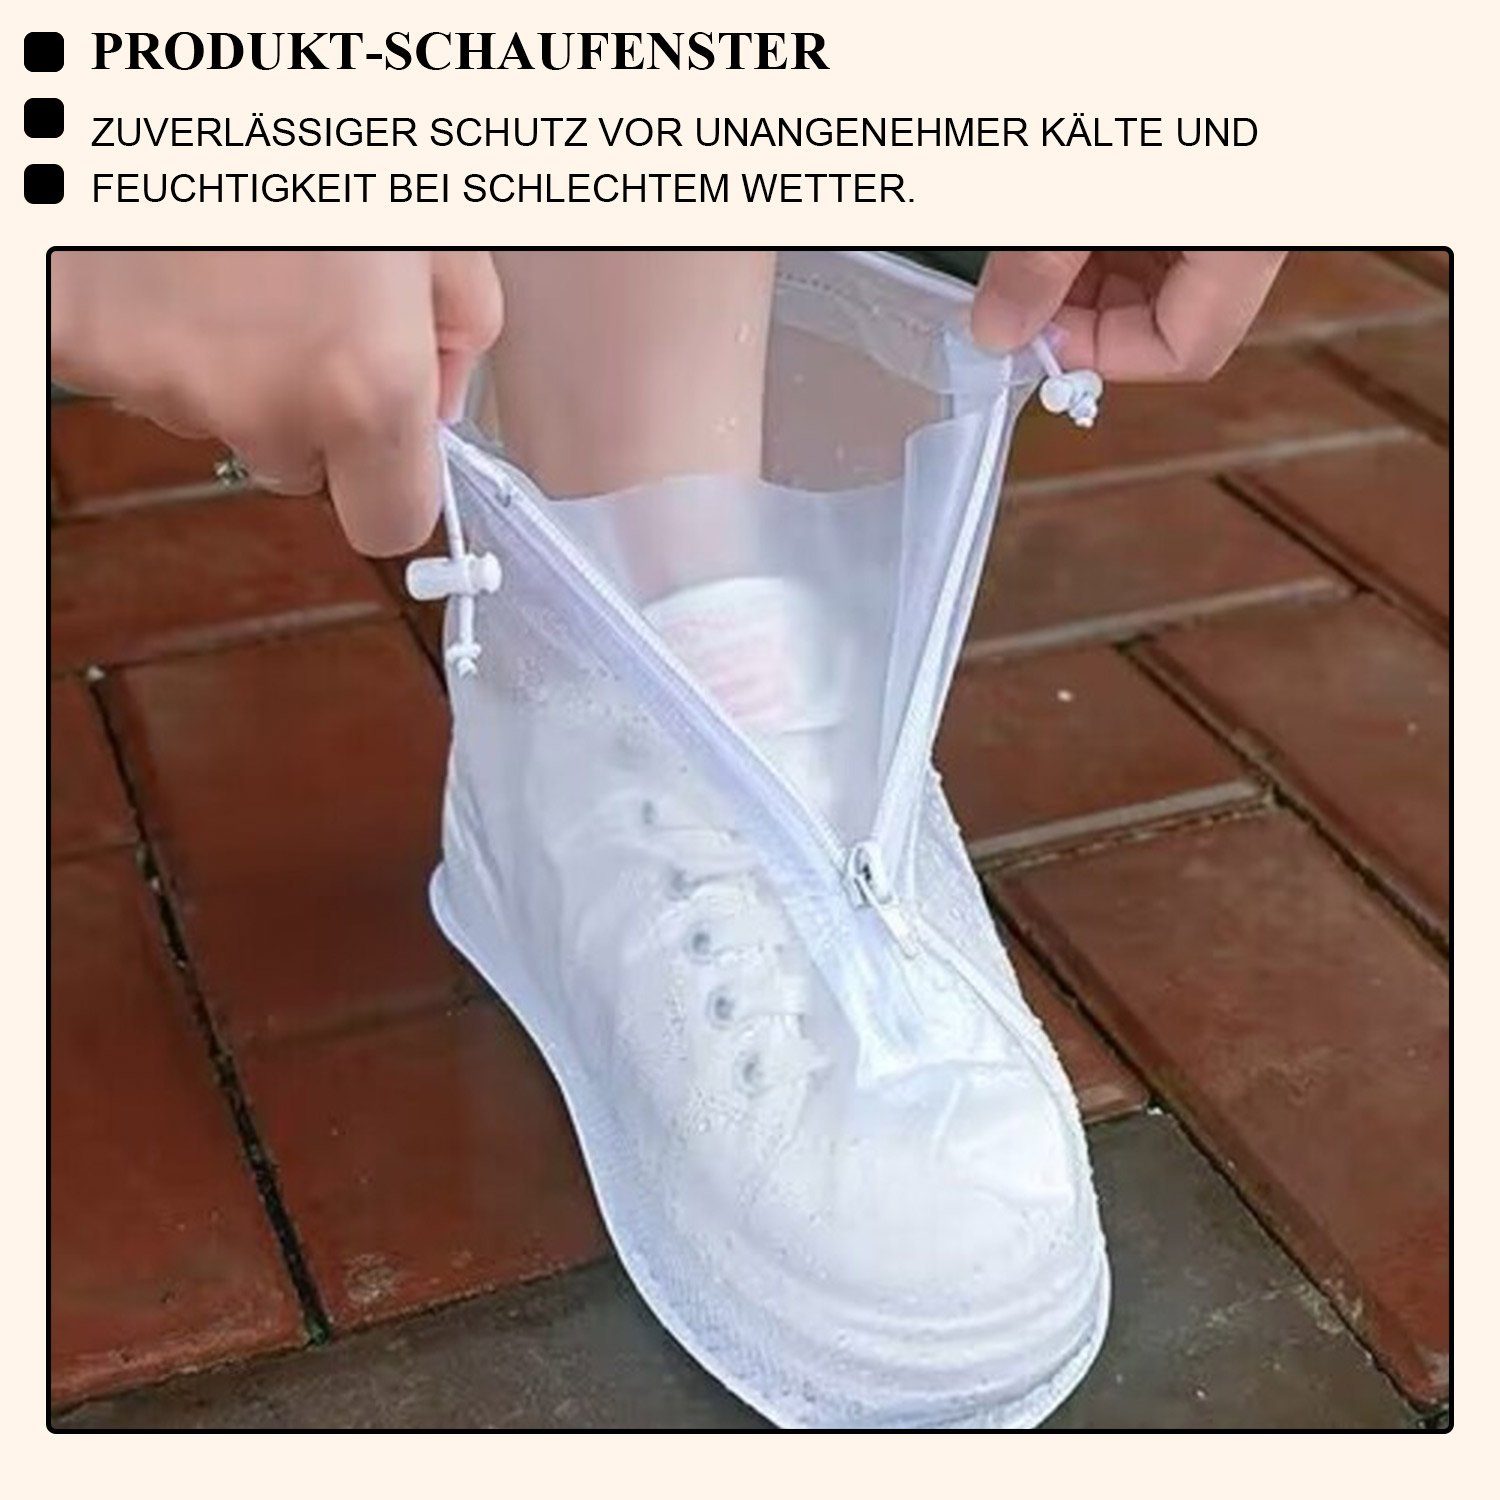 Schuhe Schuhüberzieher Weiß Regenschutz Überzieher Wasserdicht Daisred